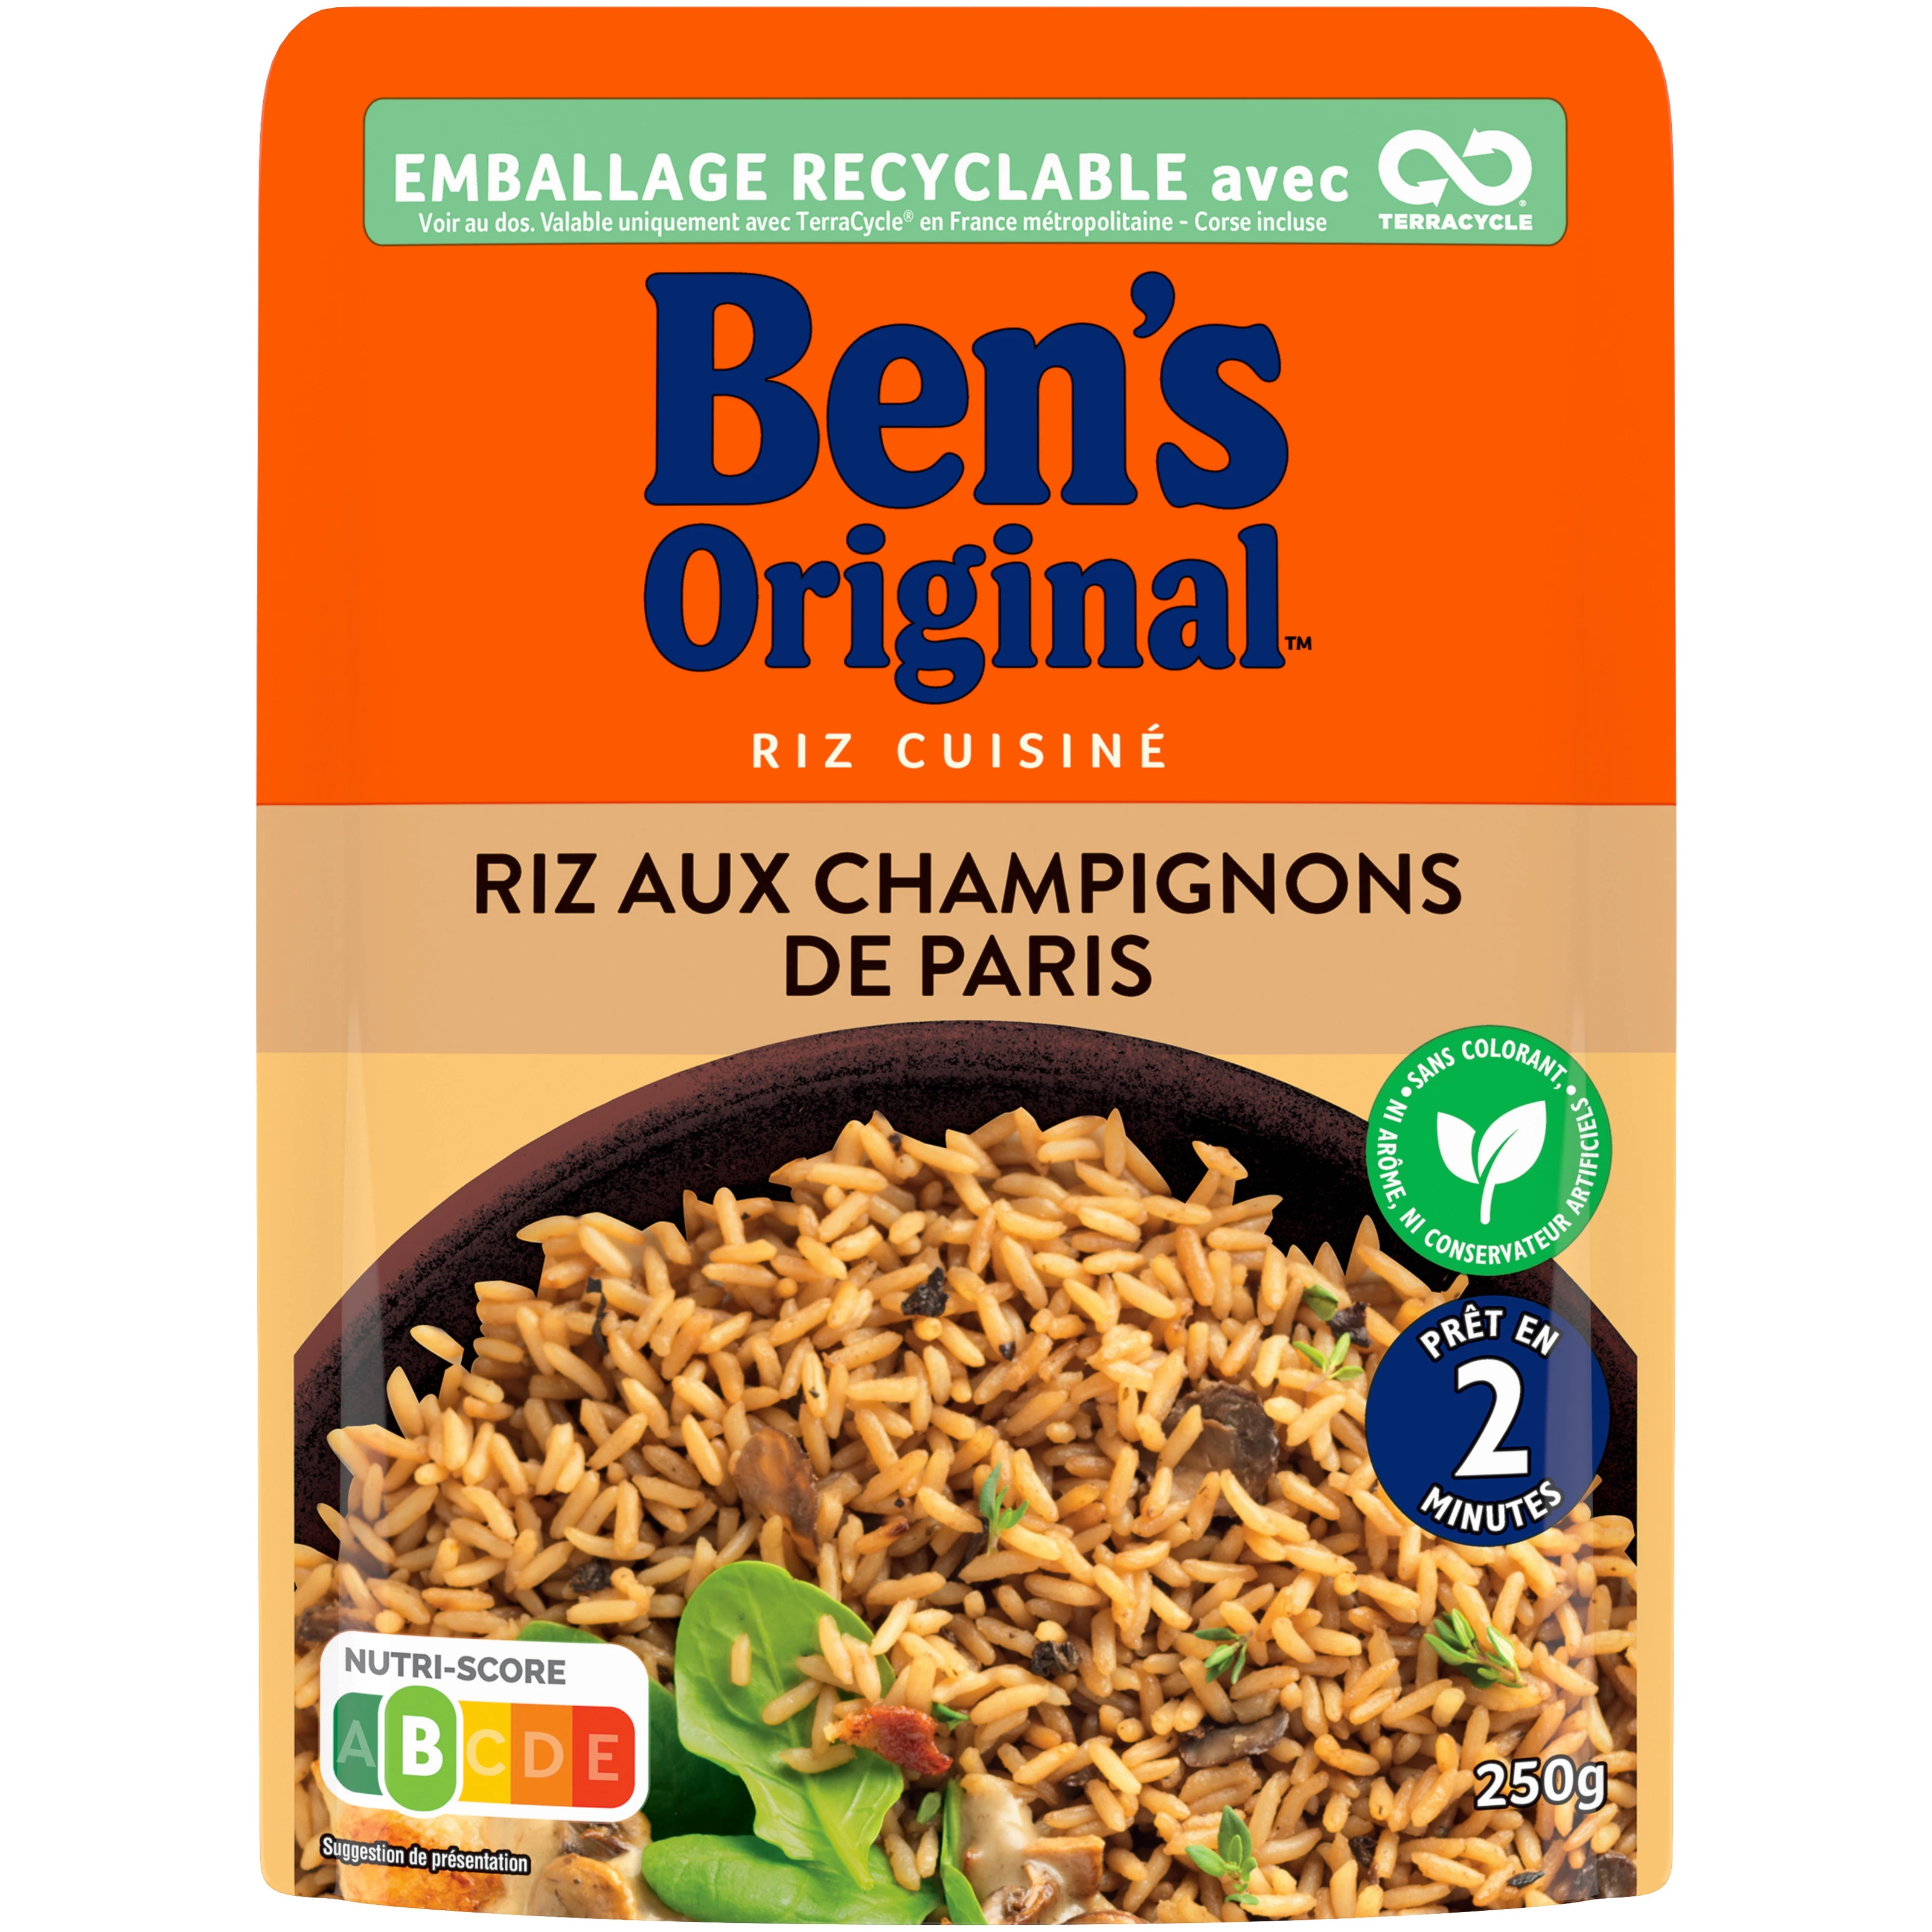 Riz Aux Champignons, 250g - BEN'S Original